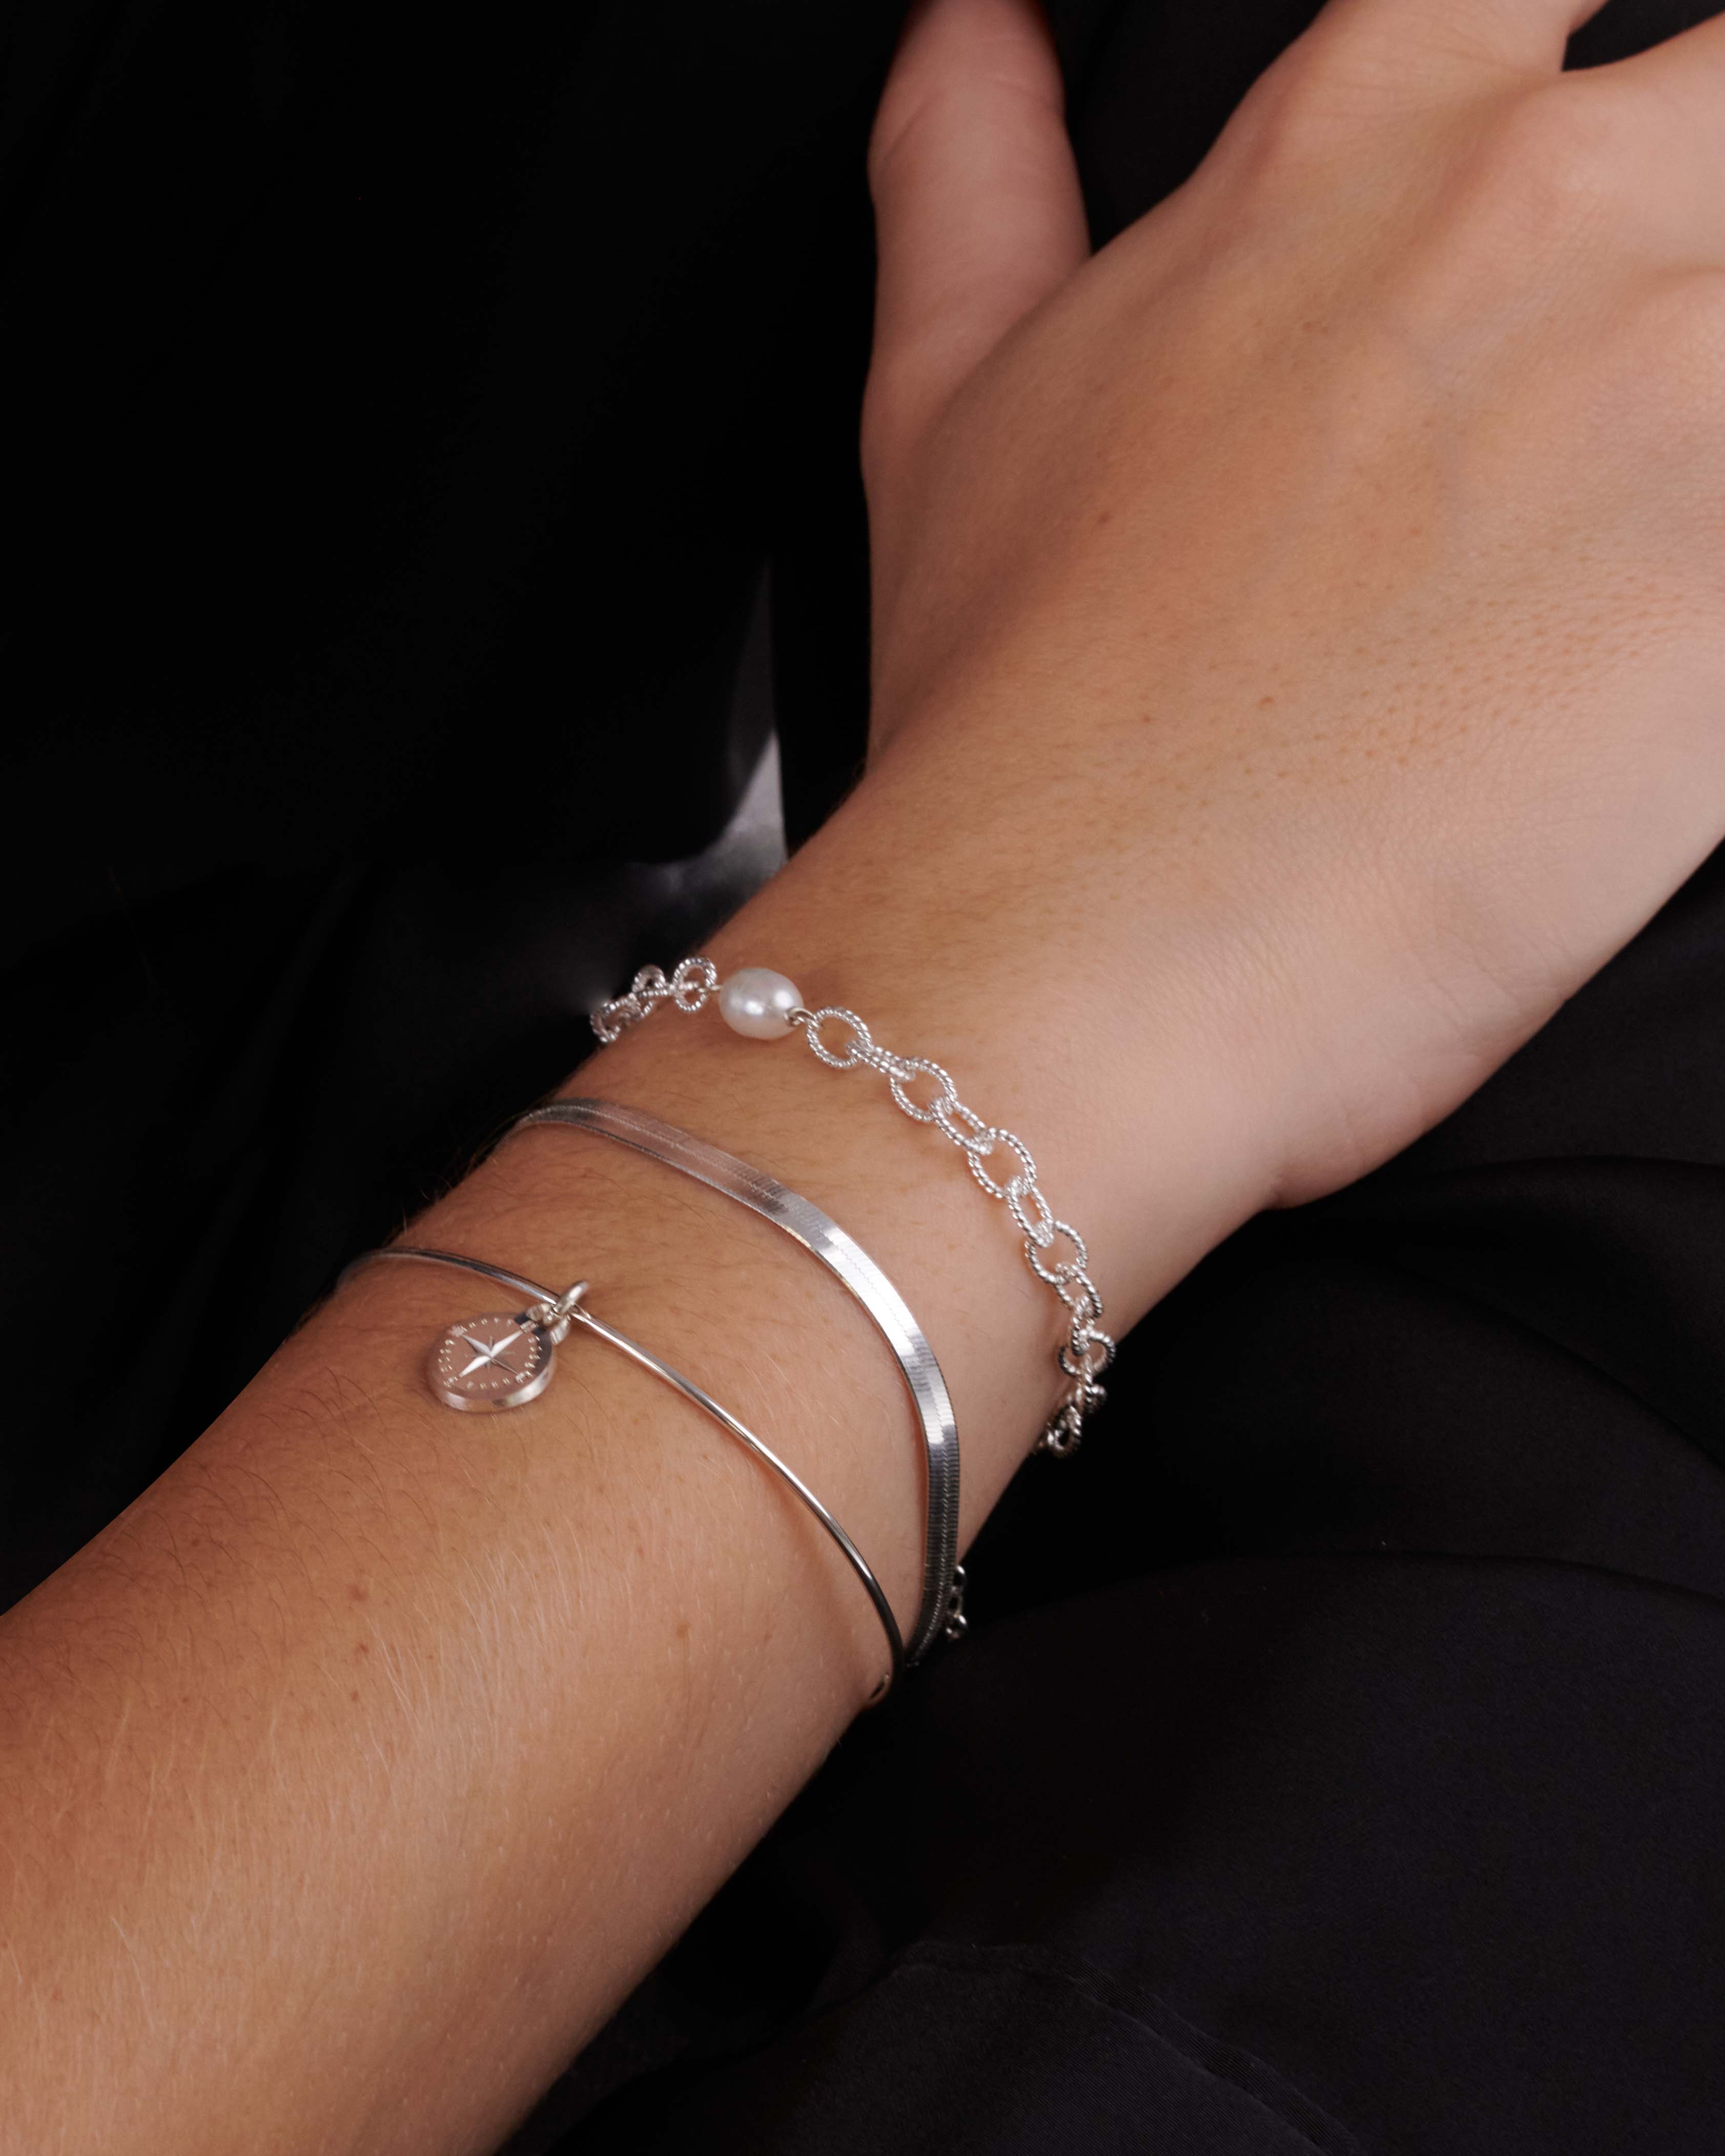 Association de bracelets en argent massif 925, composée d'un bracelet en chaîne ovale avec une perle de culture, d'une chaîne plate, et d'un jonc en anneau fin avec une petite médaille ronde représentant une rose des vents made in France. 